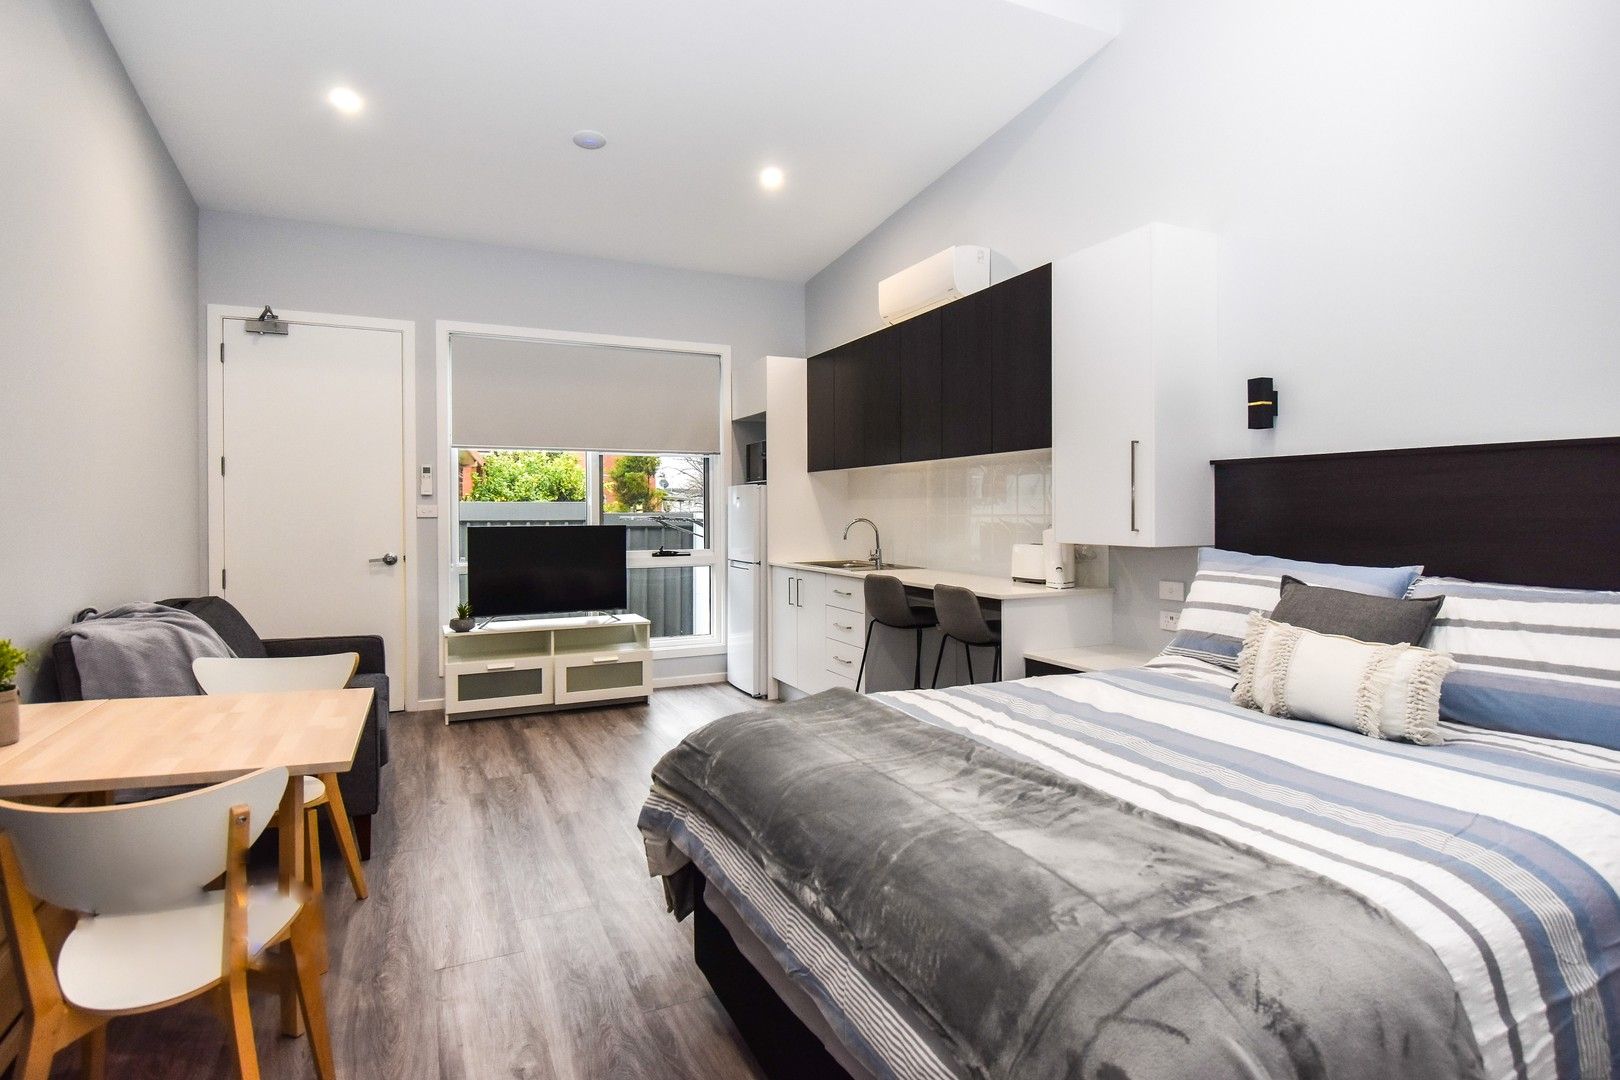 1 bedrooms Studio in 6b/48 Molong Road ORANGE NSW, 2800